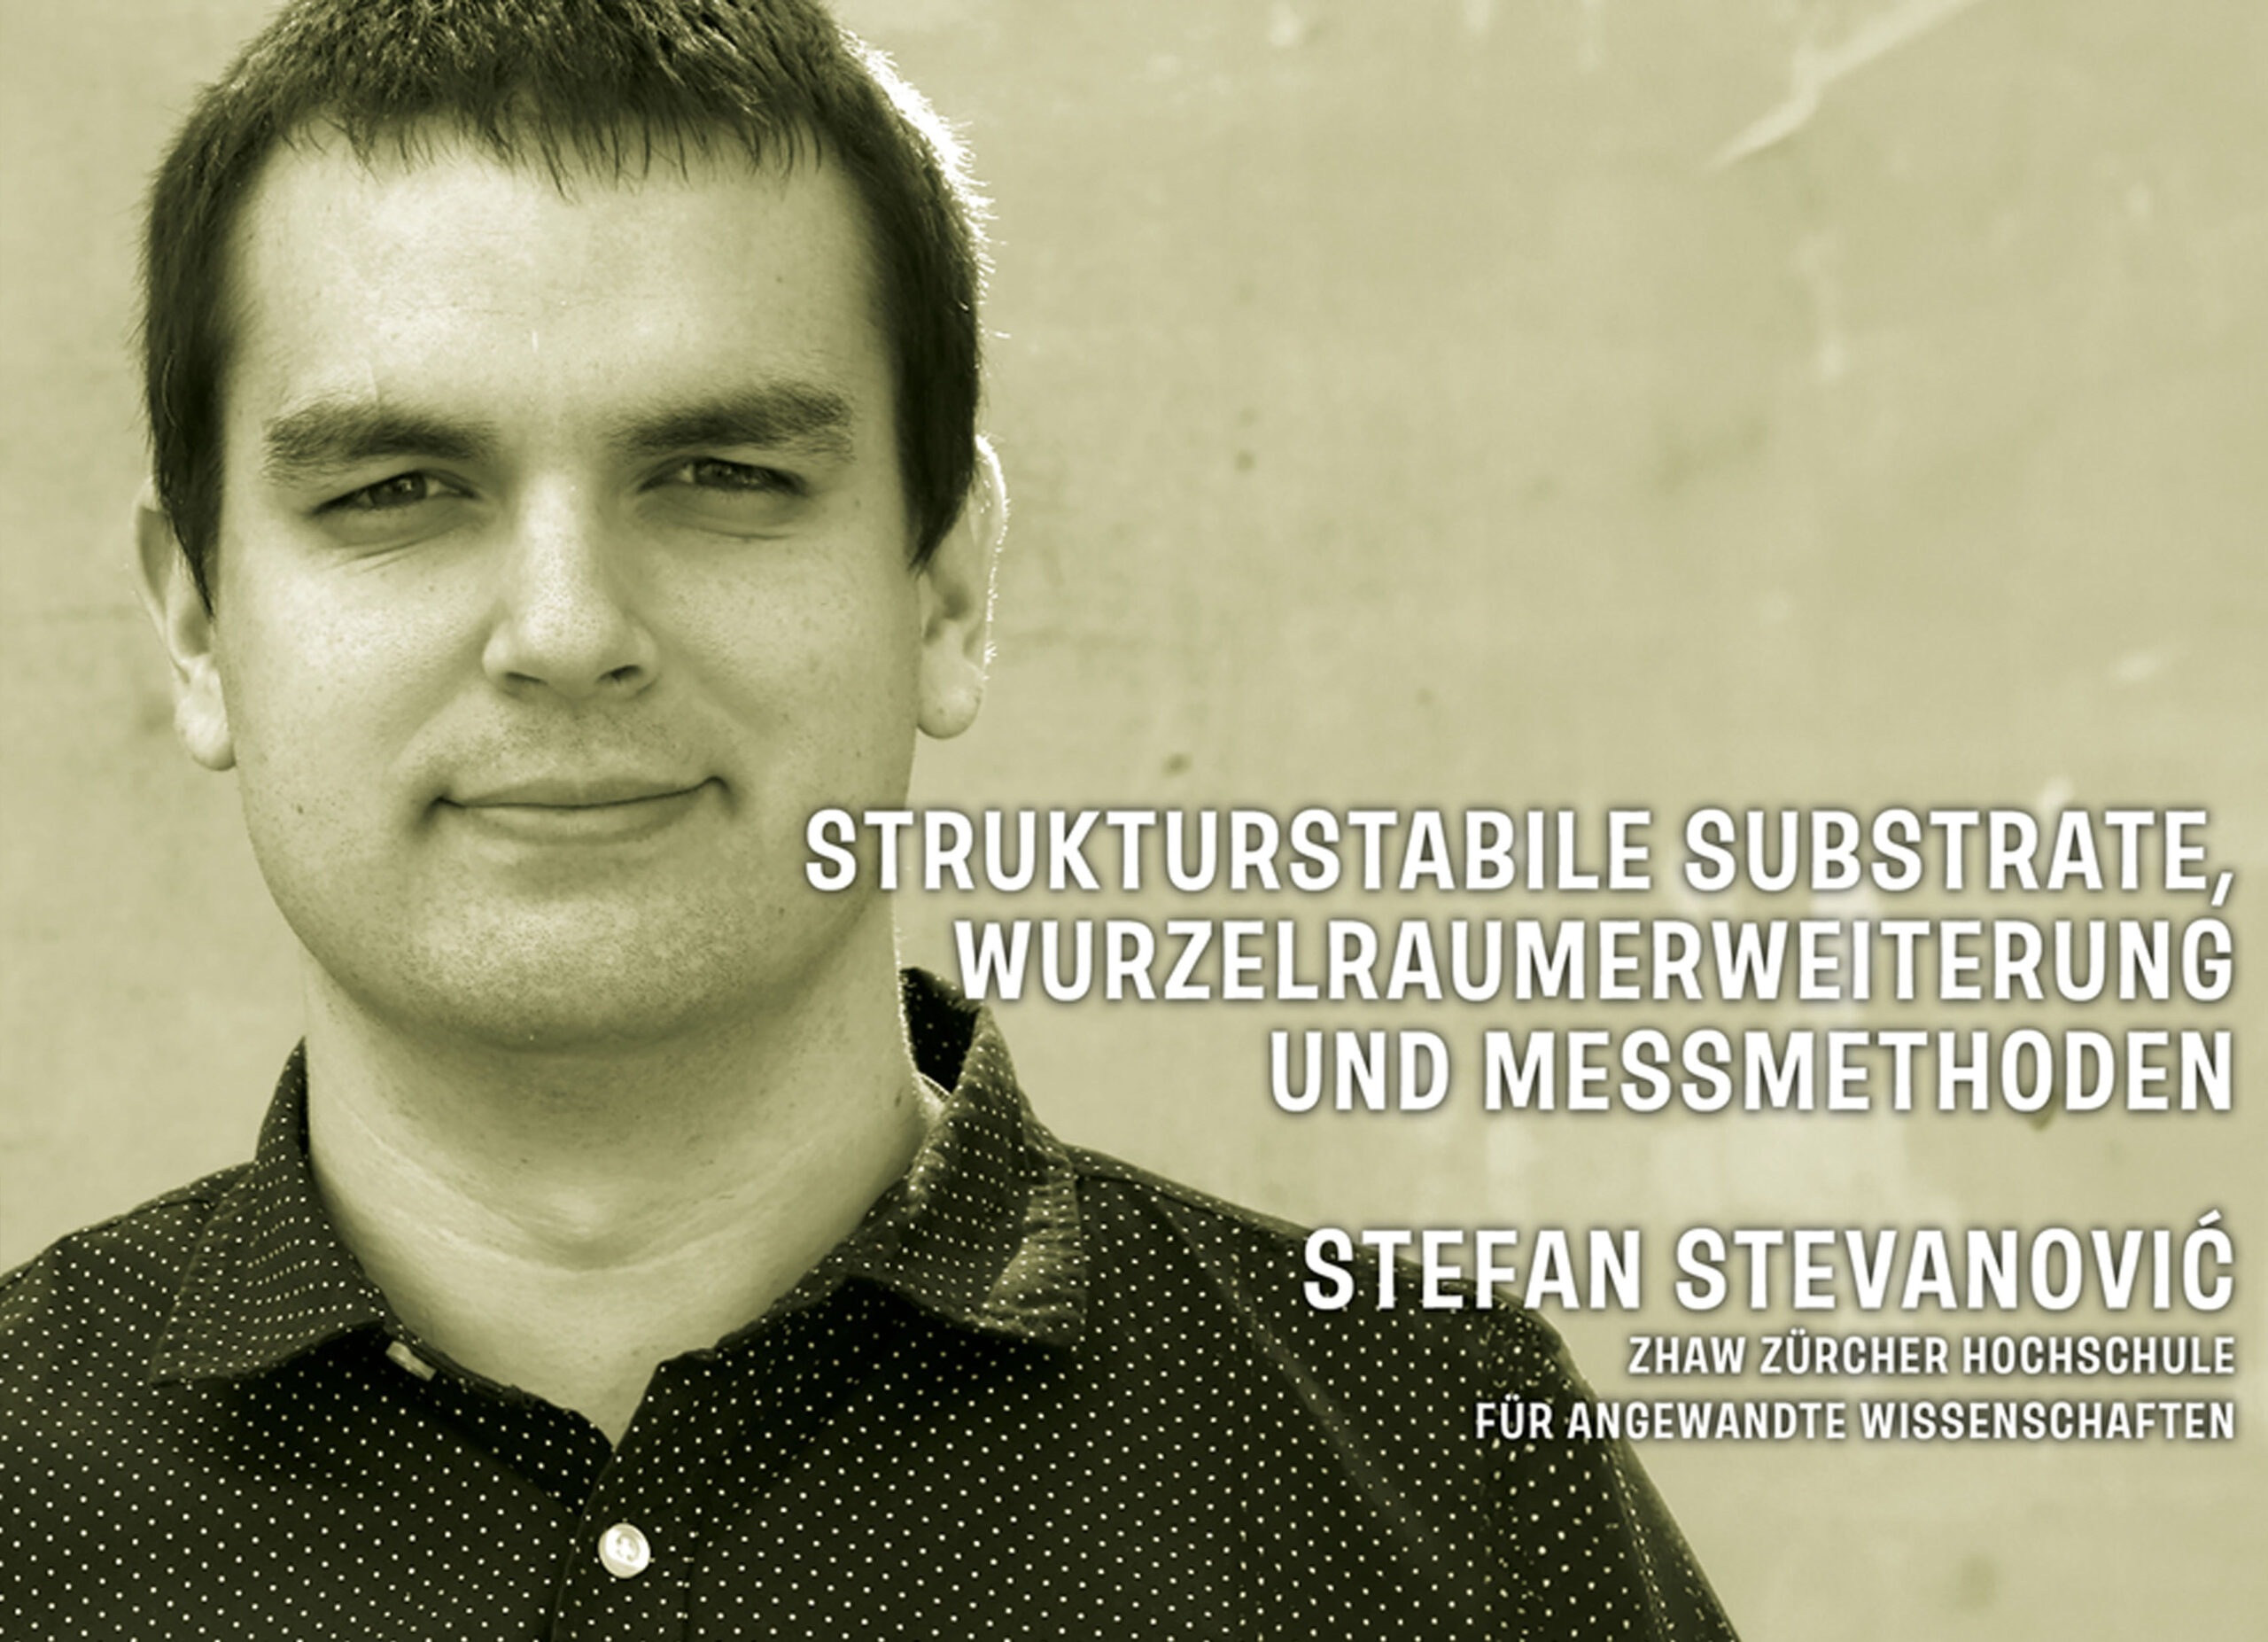 Stefan Stevanovic